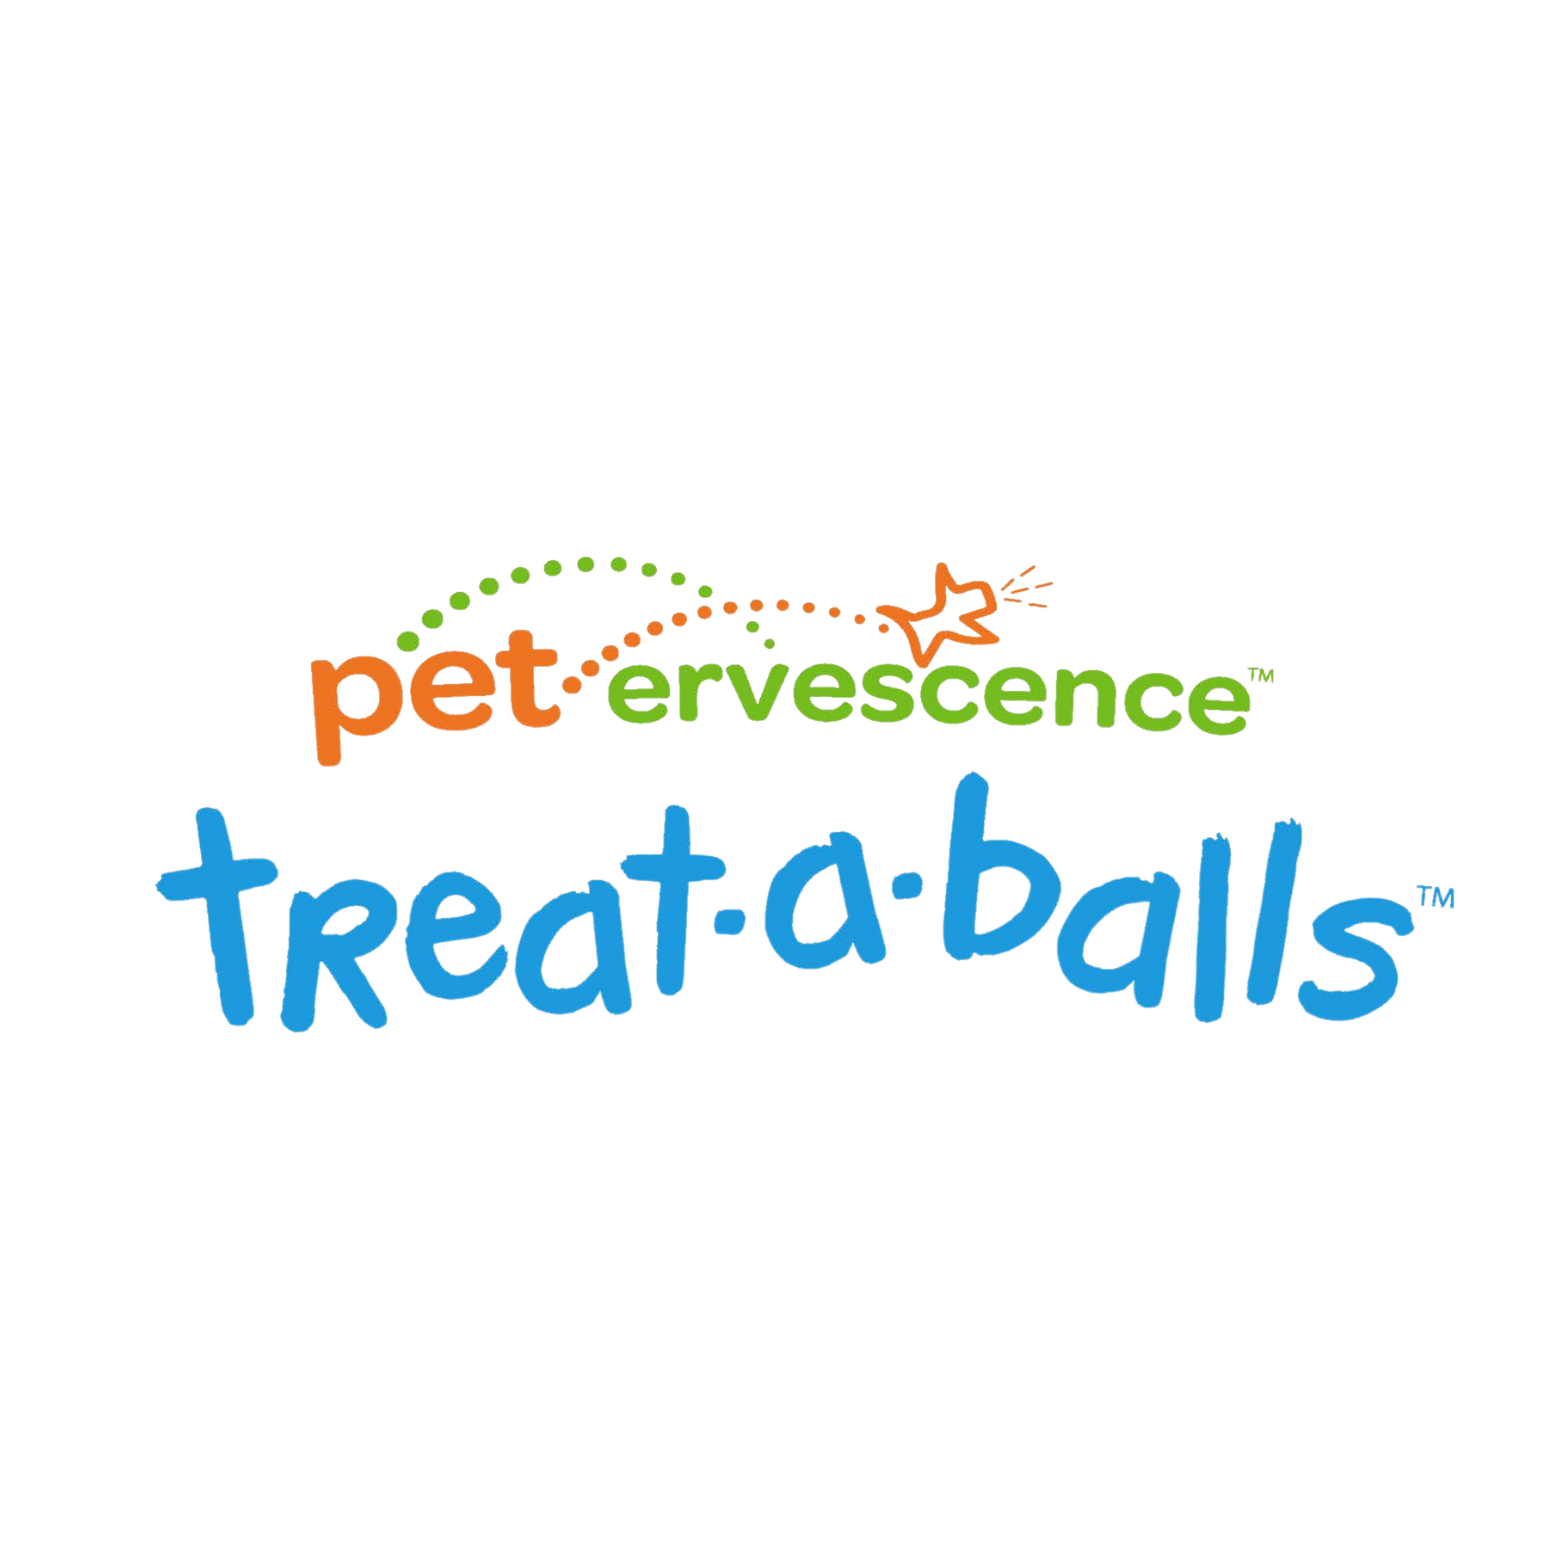 petervescence treataballs